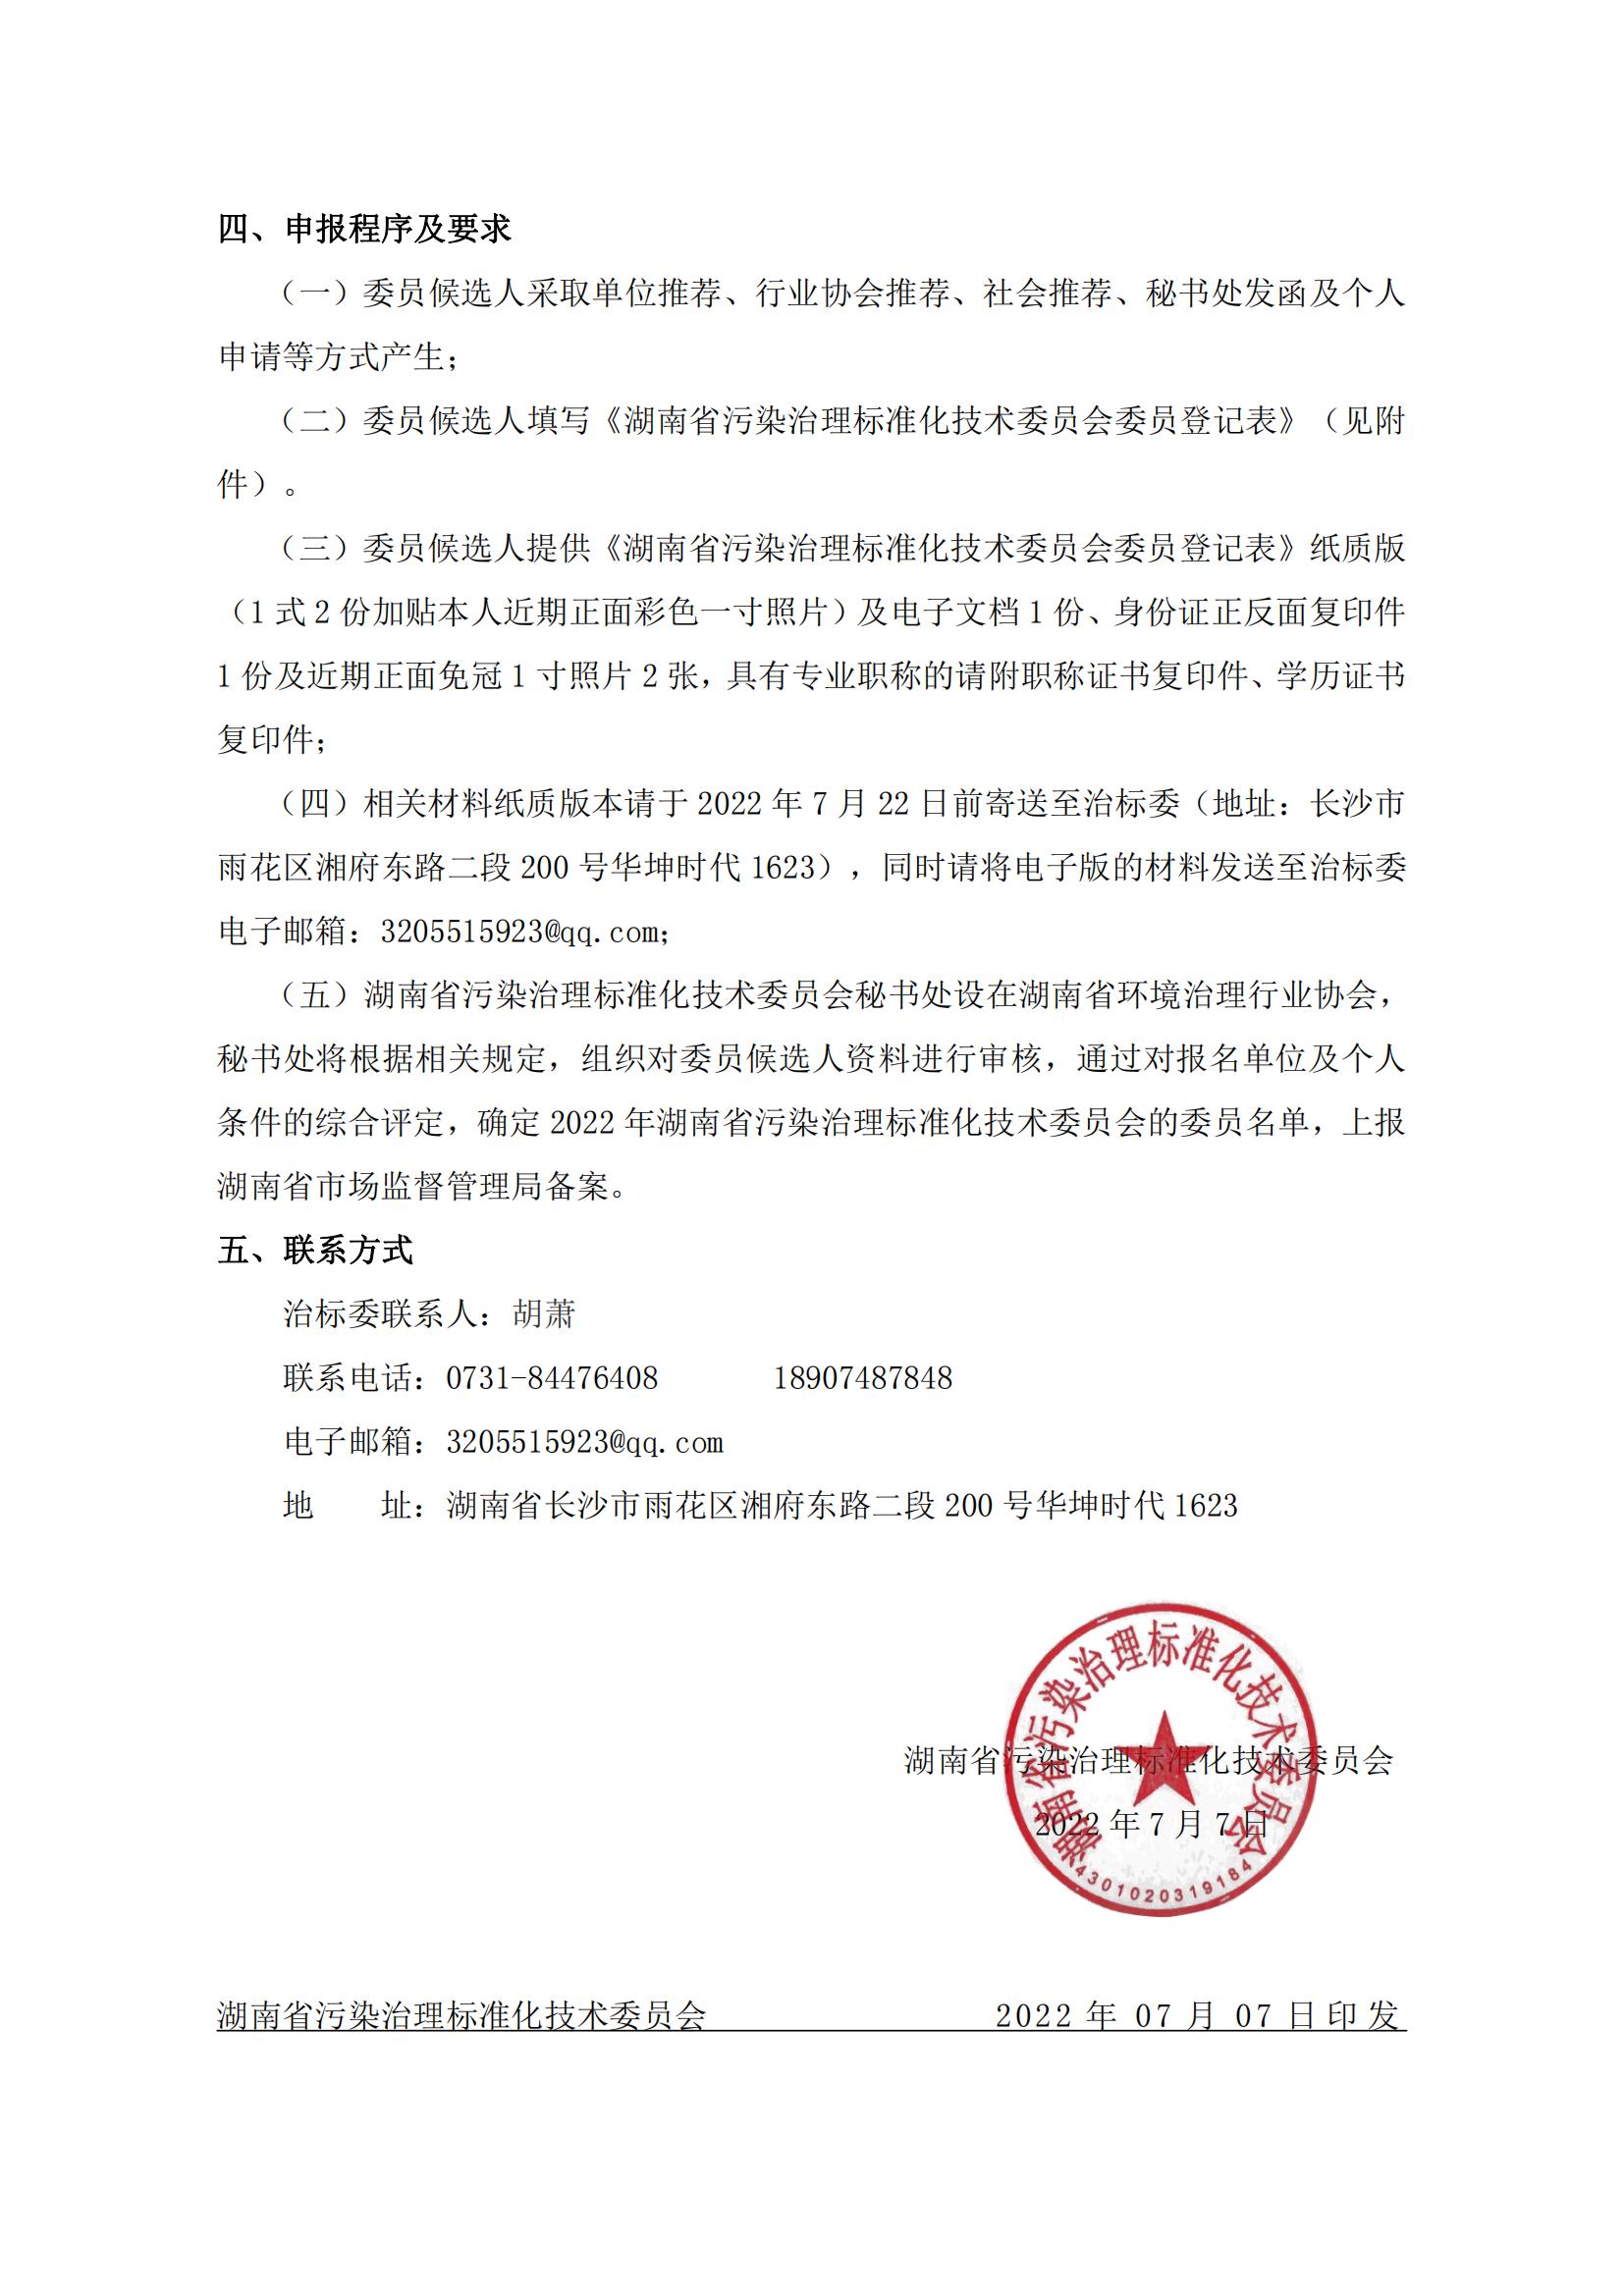 关于公开征集湖南省污染治理标准化技术委员会委员的函(1)_01.jpg